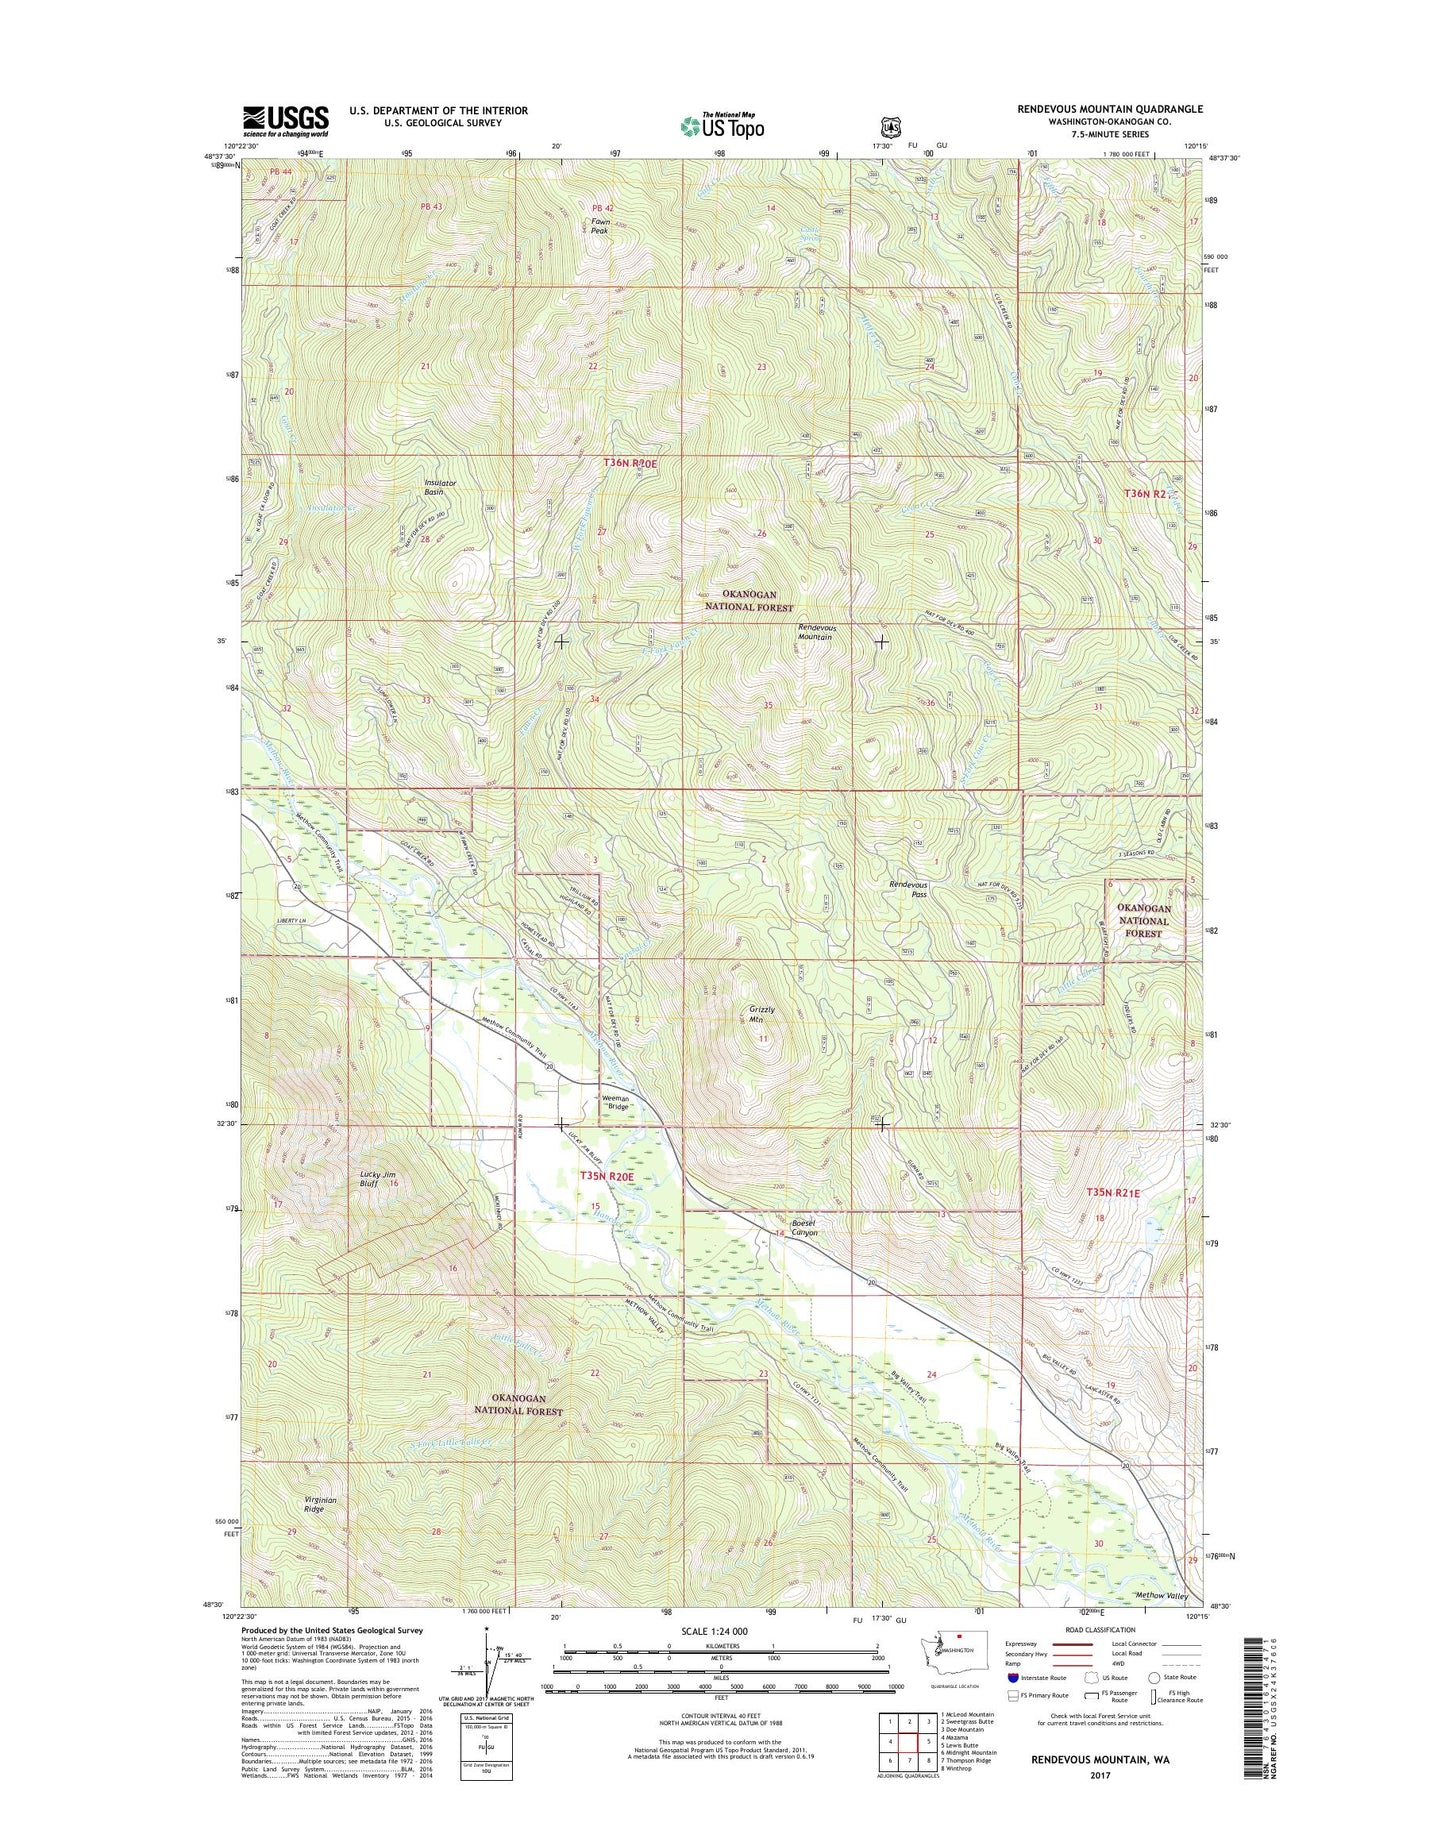 Rendevous Mountain Washington US Topo Map Image